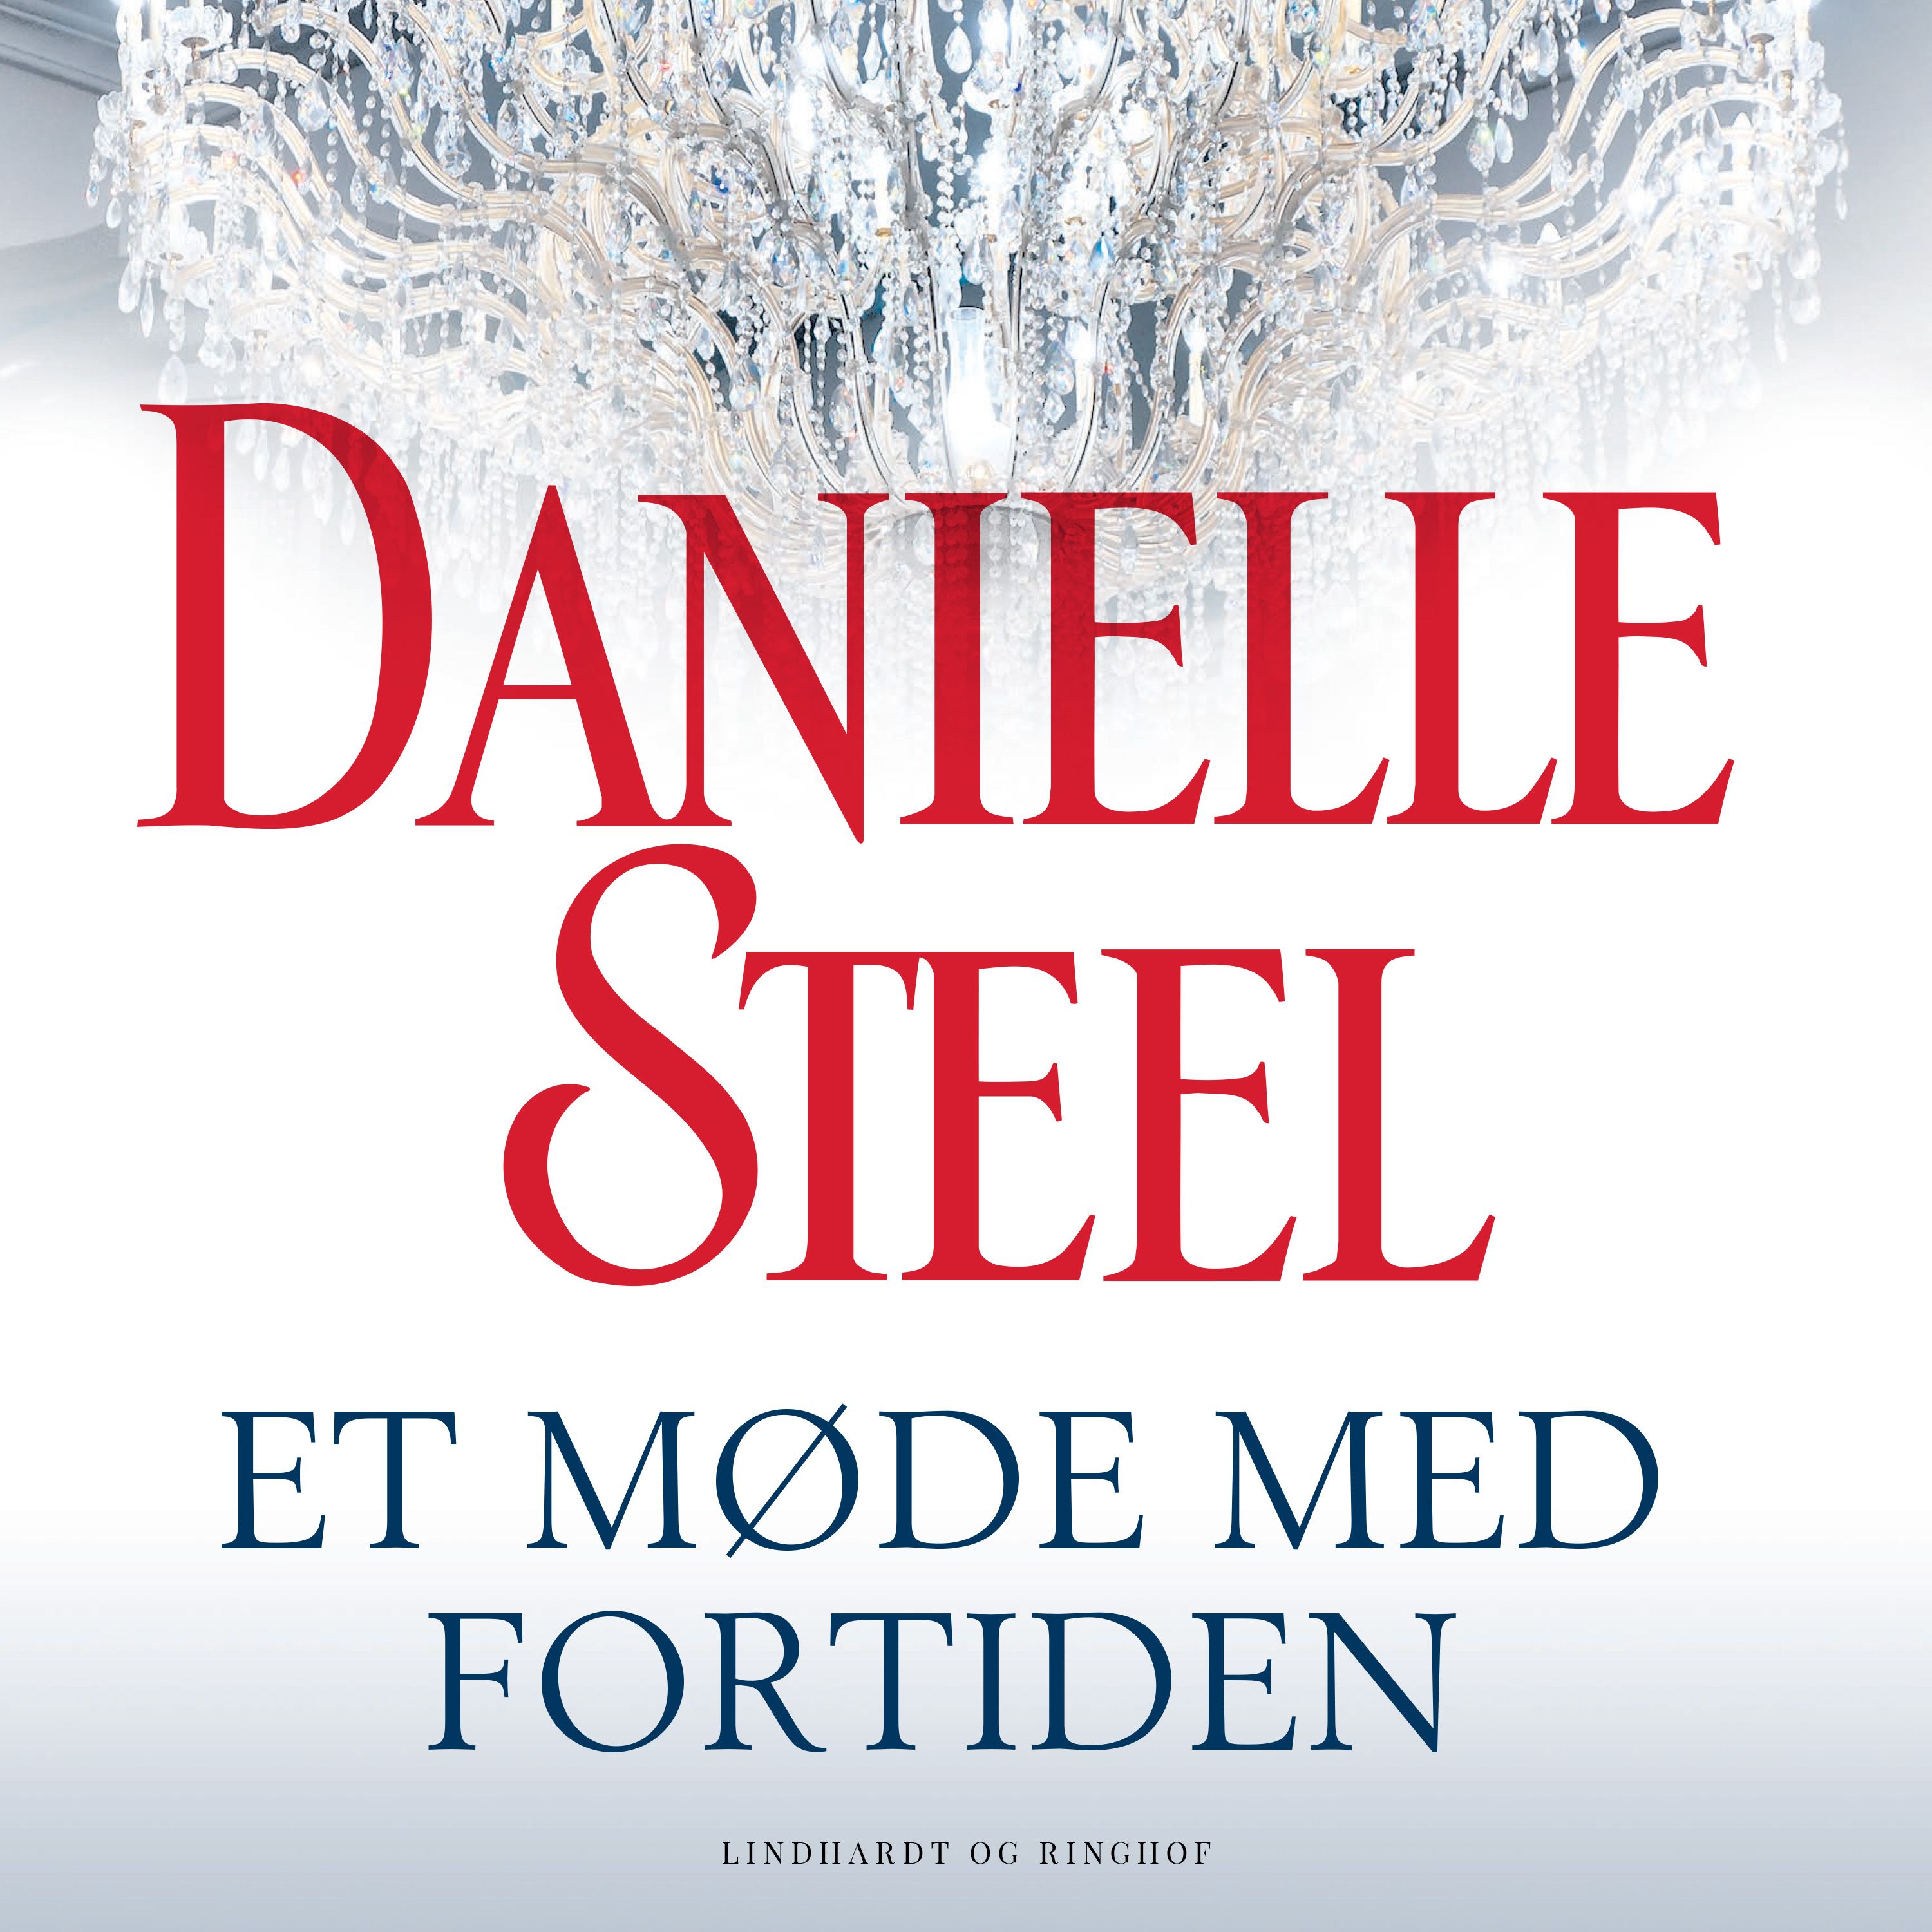 Et møde med fortiden, lydbog af Danielle Steel